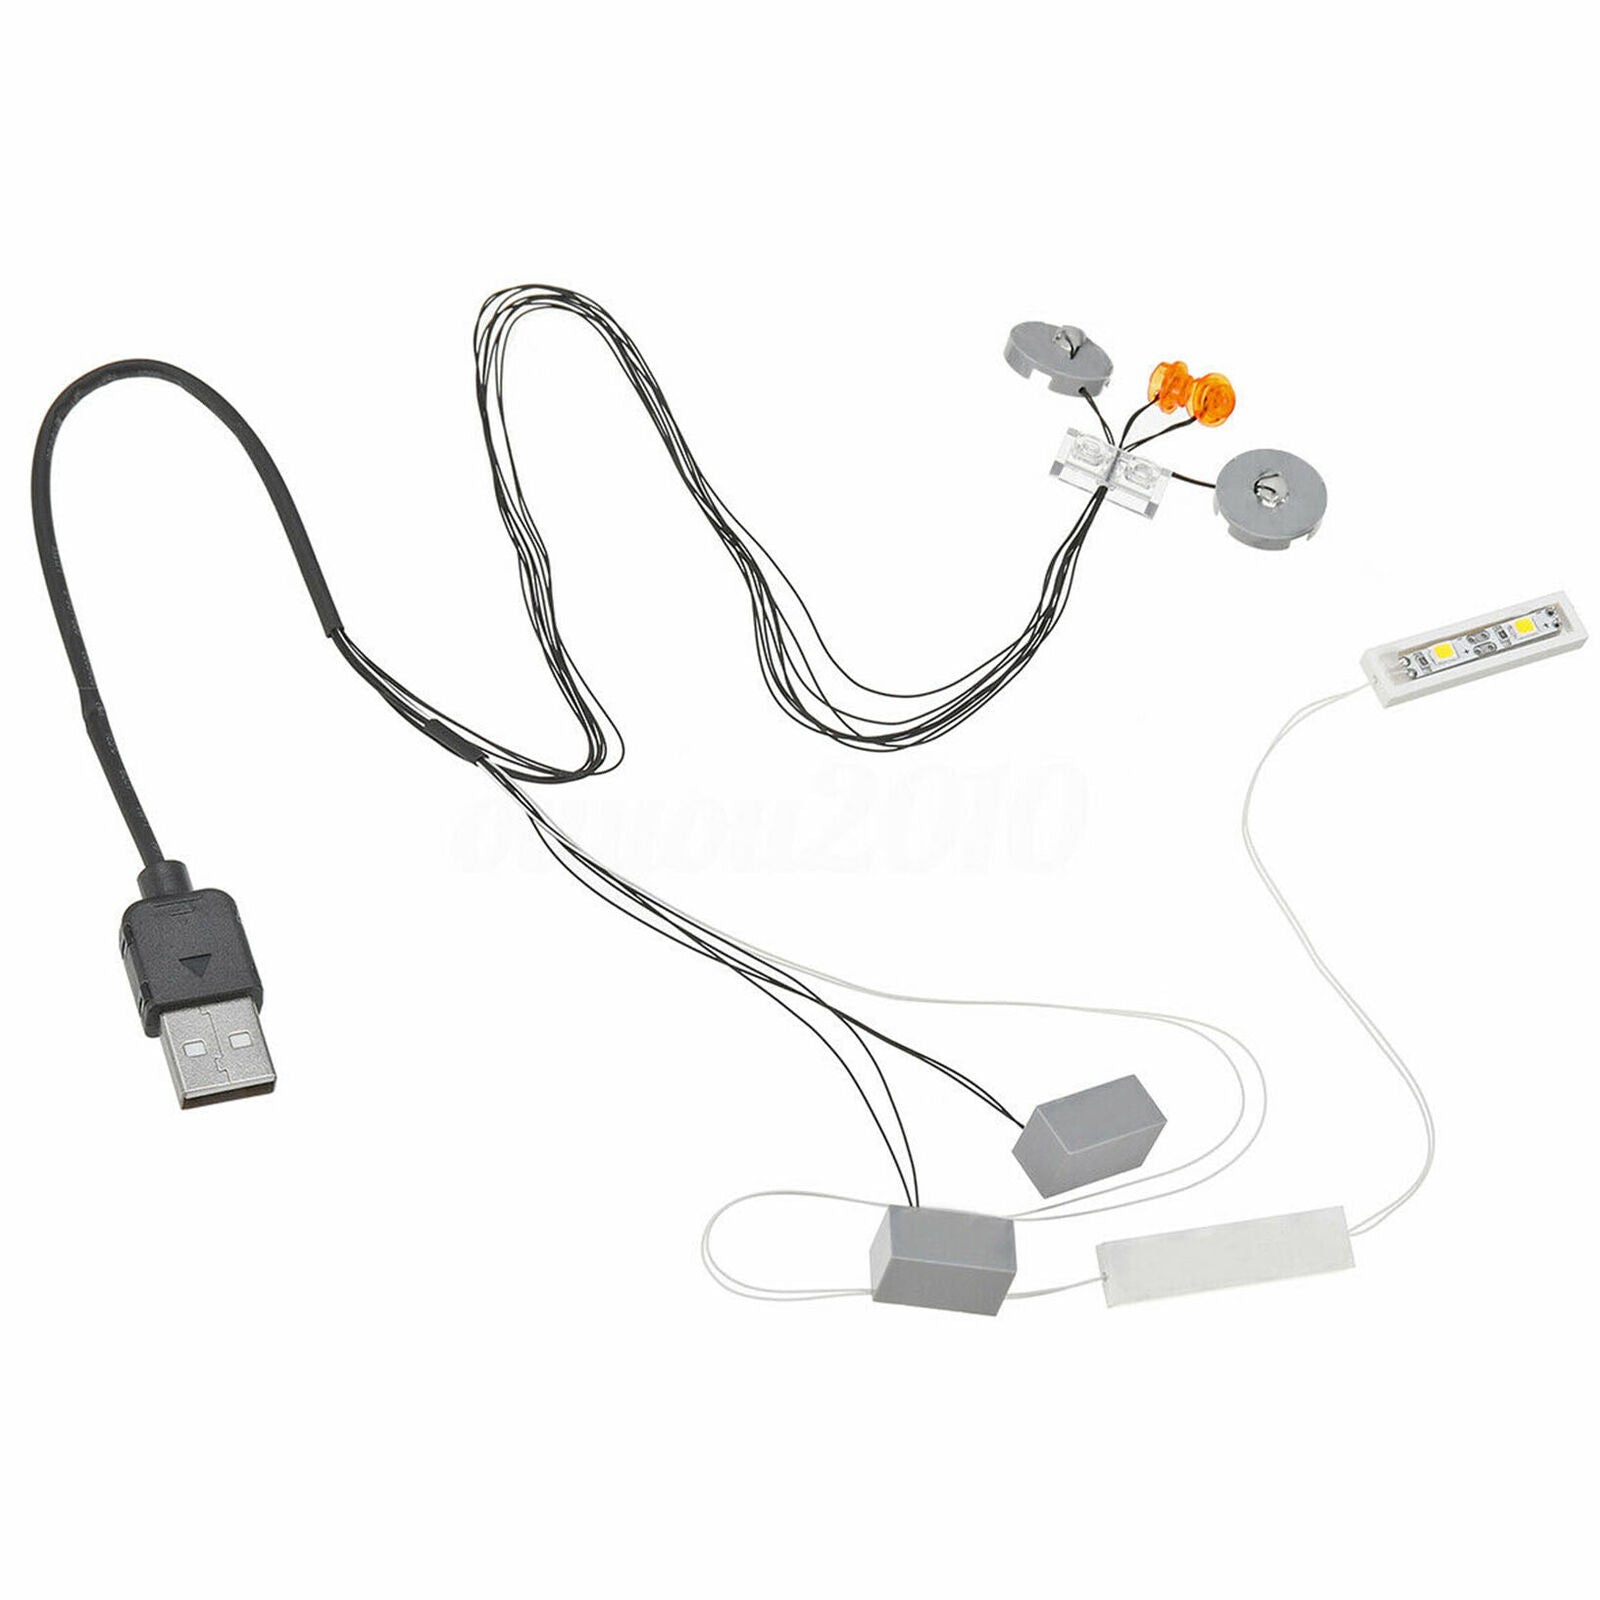 Kit ONLY For VW CAMPER VAN USB Interface DIY LED Light Lighting